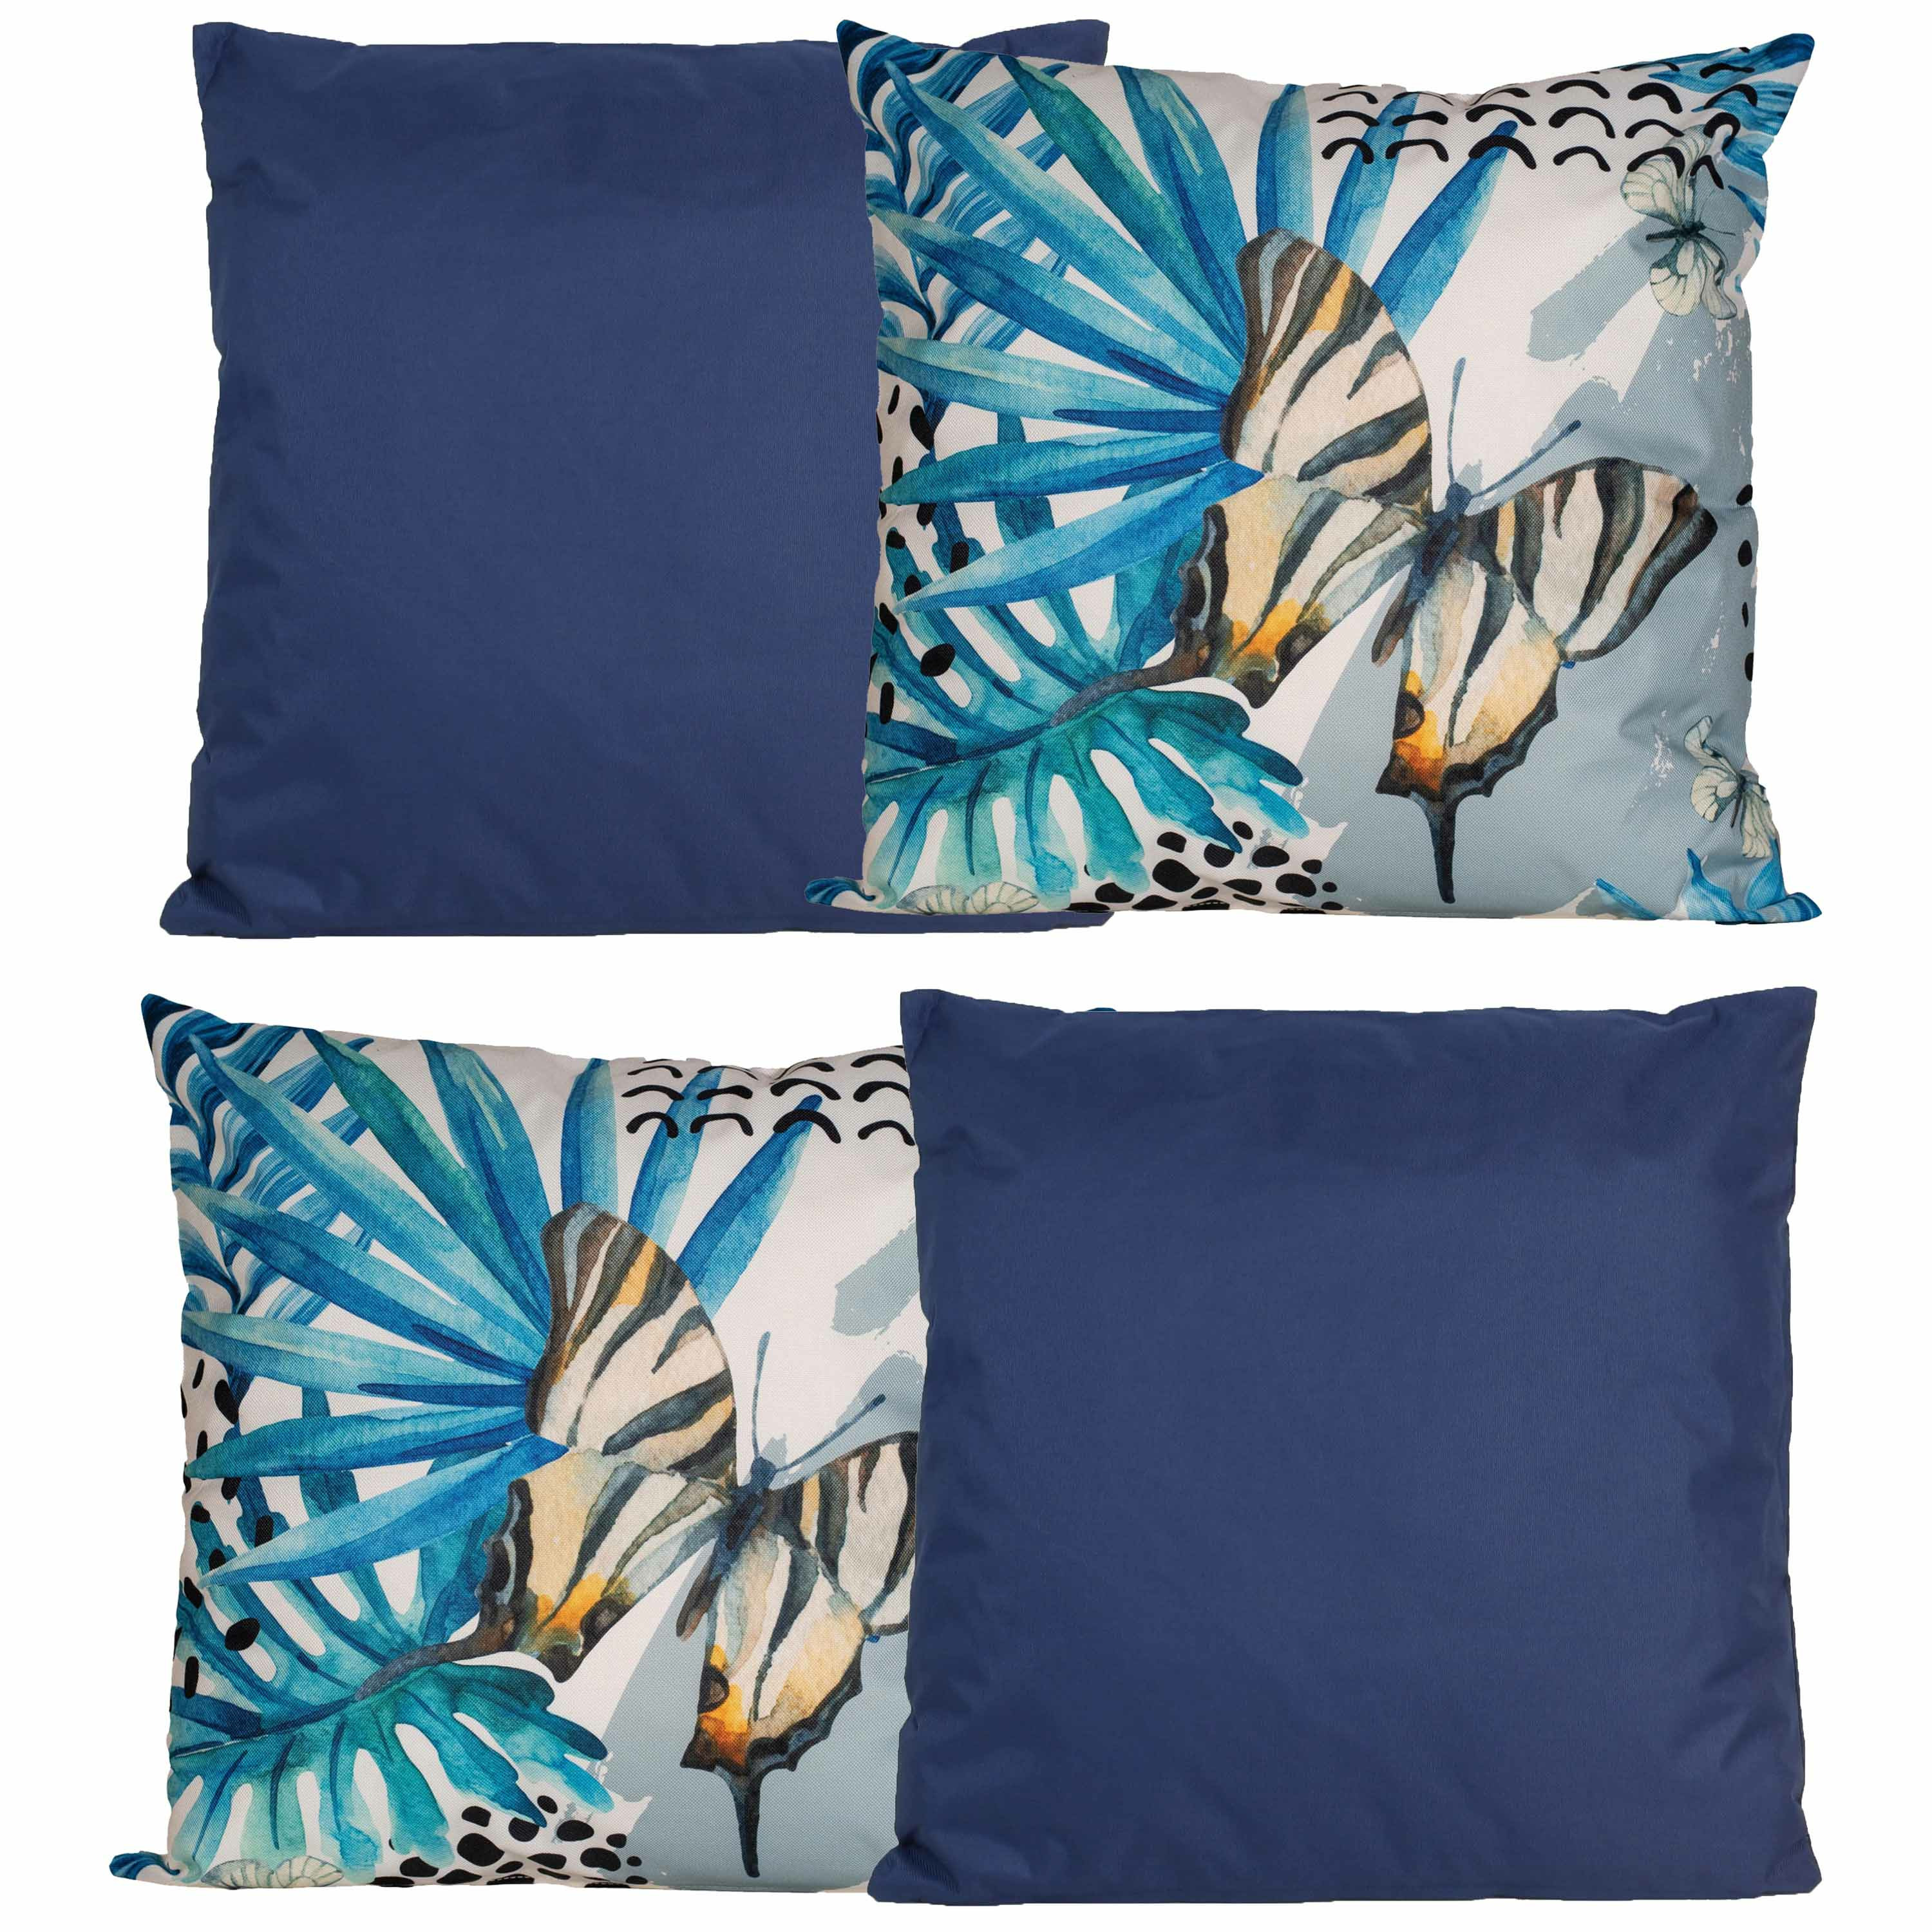 Bank-tuin kussens set voor binnen-buiten 4x stuks donkerblauw-tropical print 45 x 45 cm